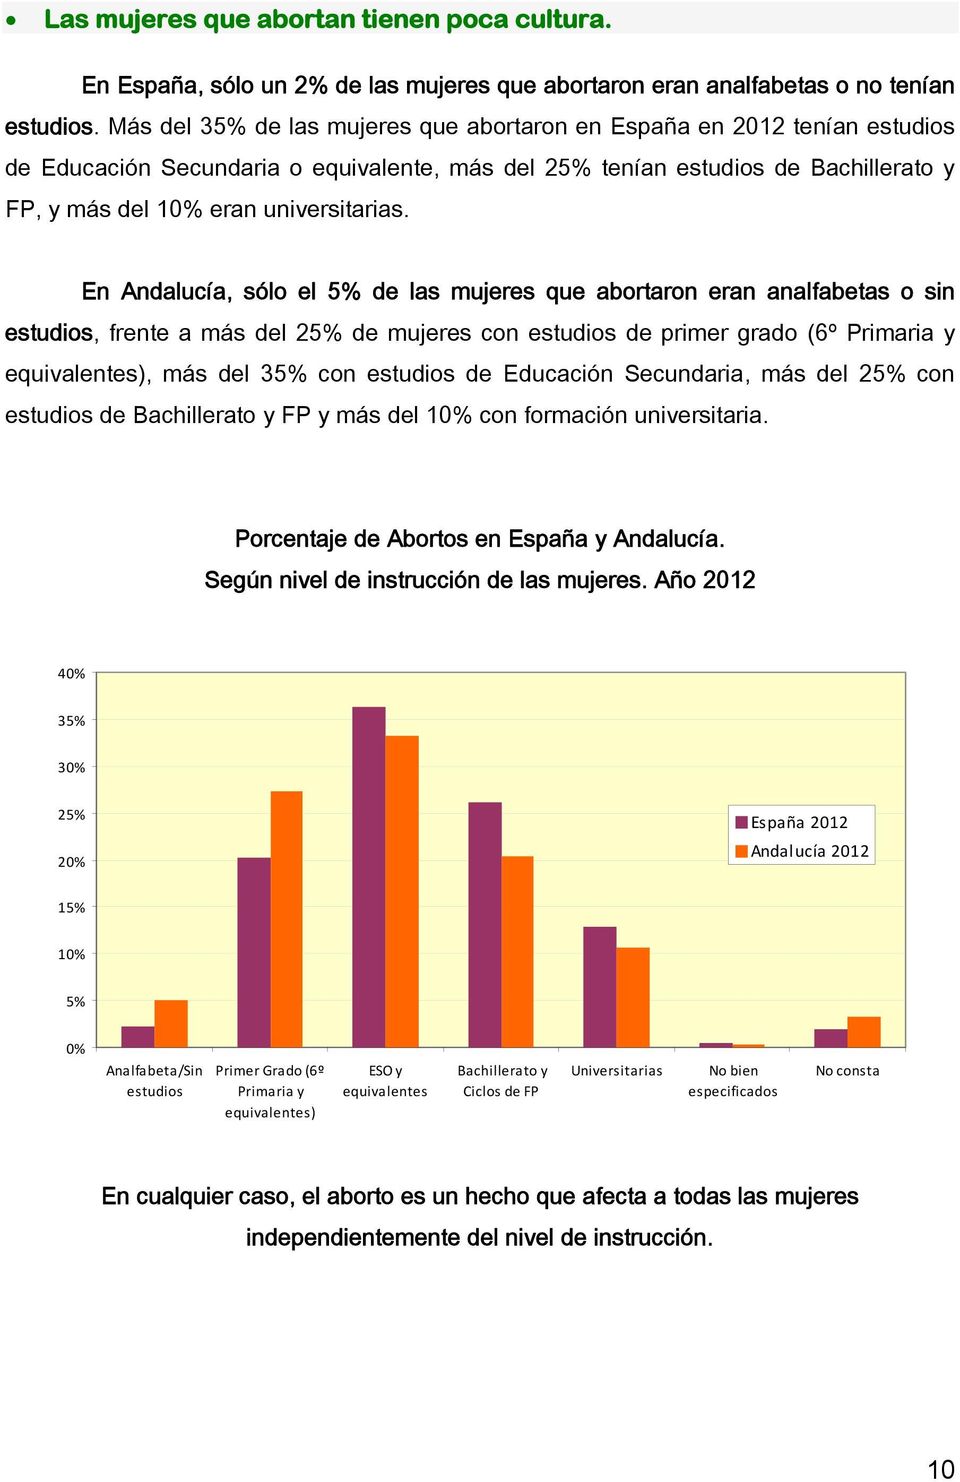 En Andalucía, sólo el 5% de las mujeres que abortaron eran analfabetas o sin estudios, frente a más del 25% de mujeres con estudios de primer grado (6º Primaria y equivalentes), más del 35% con